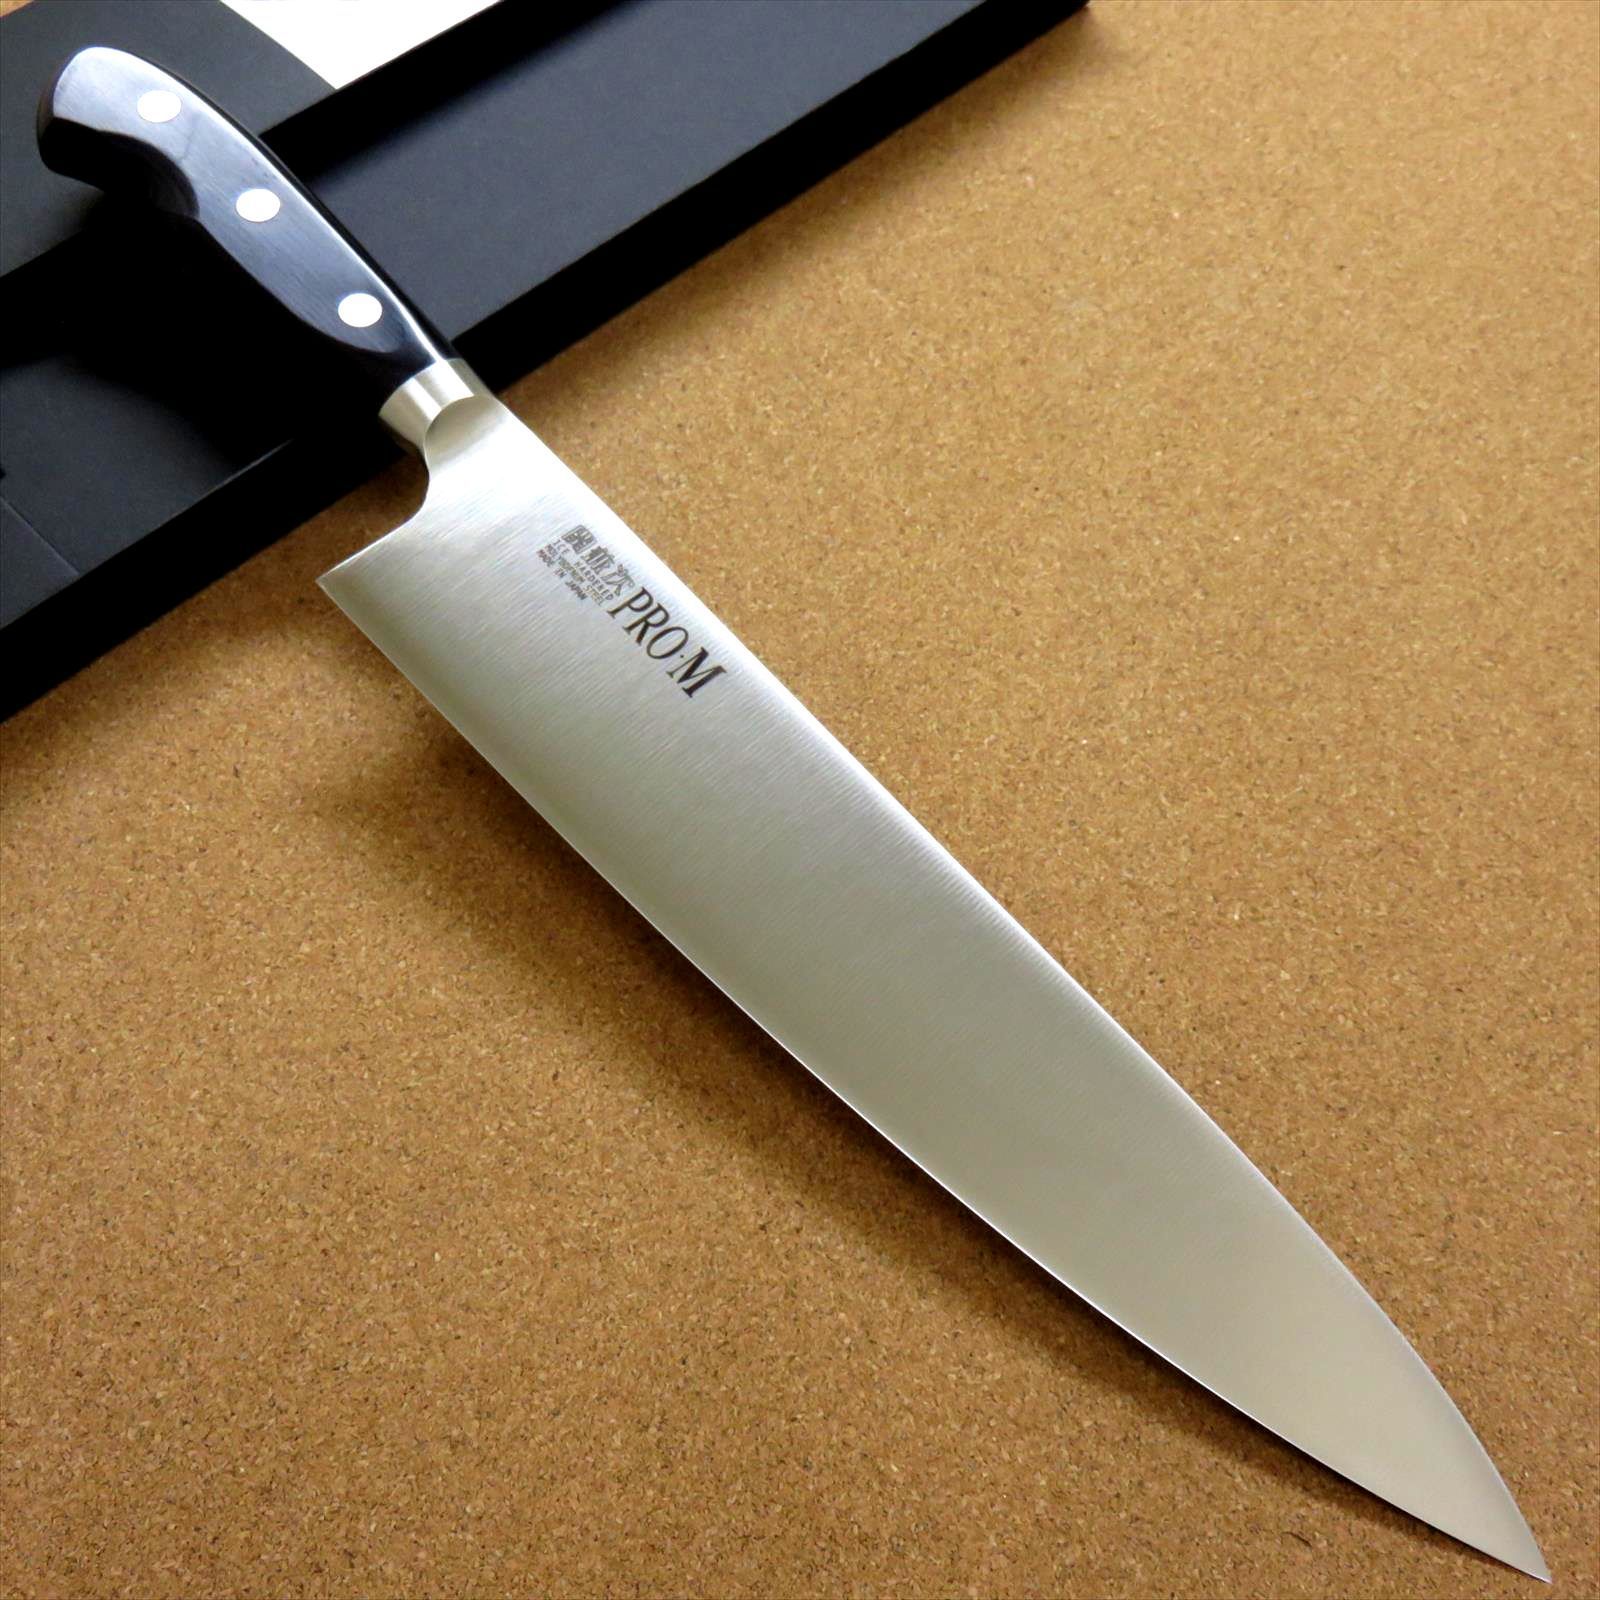 関の刃物 牛刀 240mm 三昧 荒波 コアレス鋼 野菜 肉切 両刃万能洋包丁ねねちの牛刀